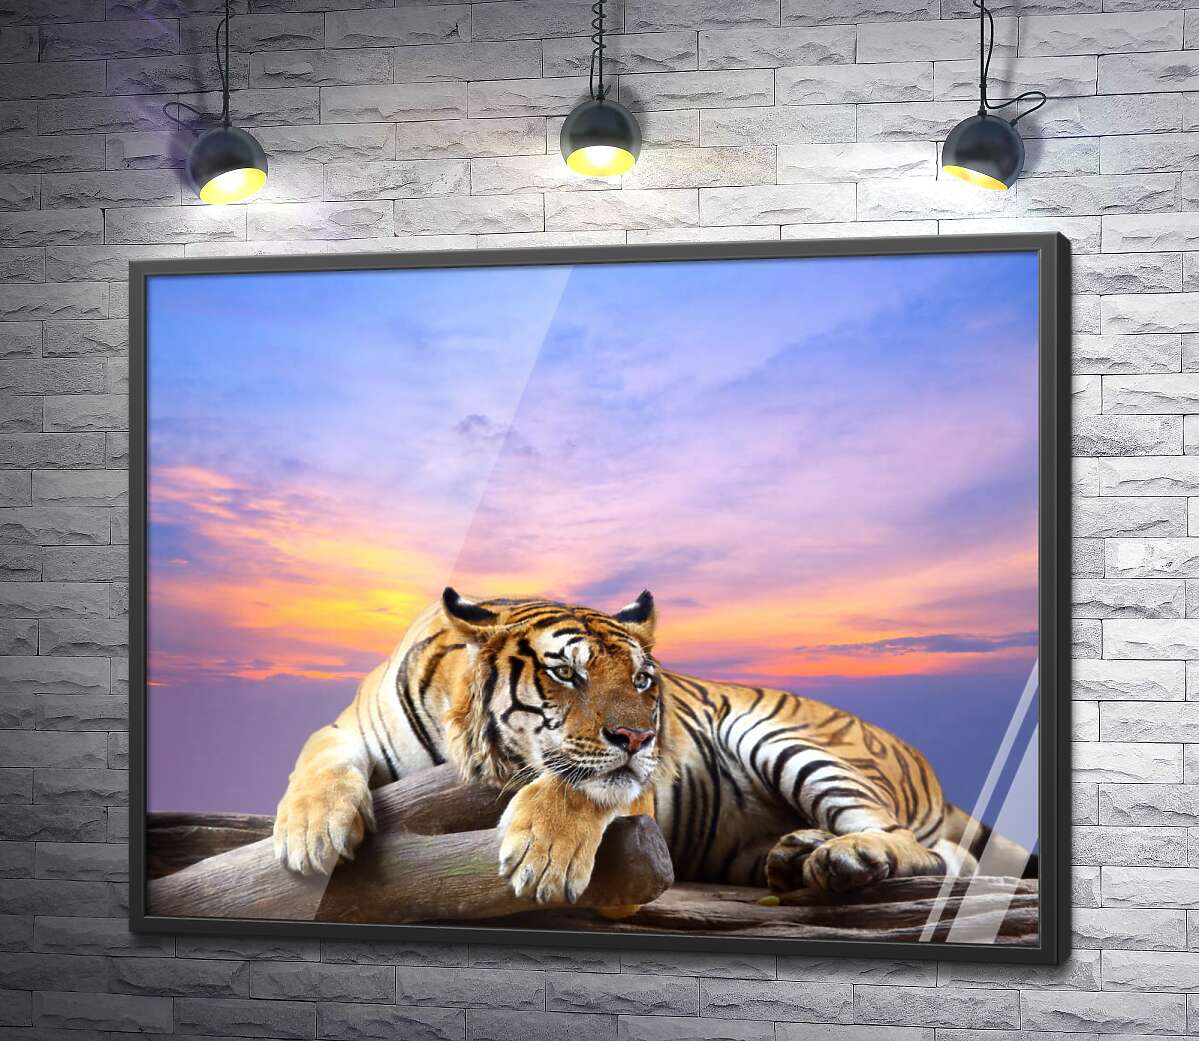 постер Полосатый тигр мирно лежит на камне под переливами вечернего неба